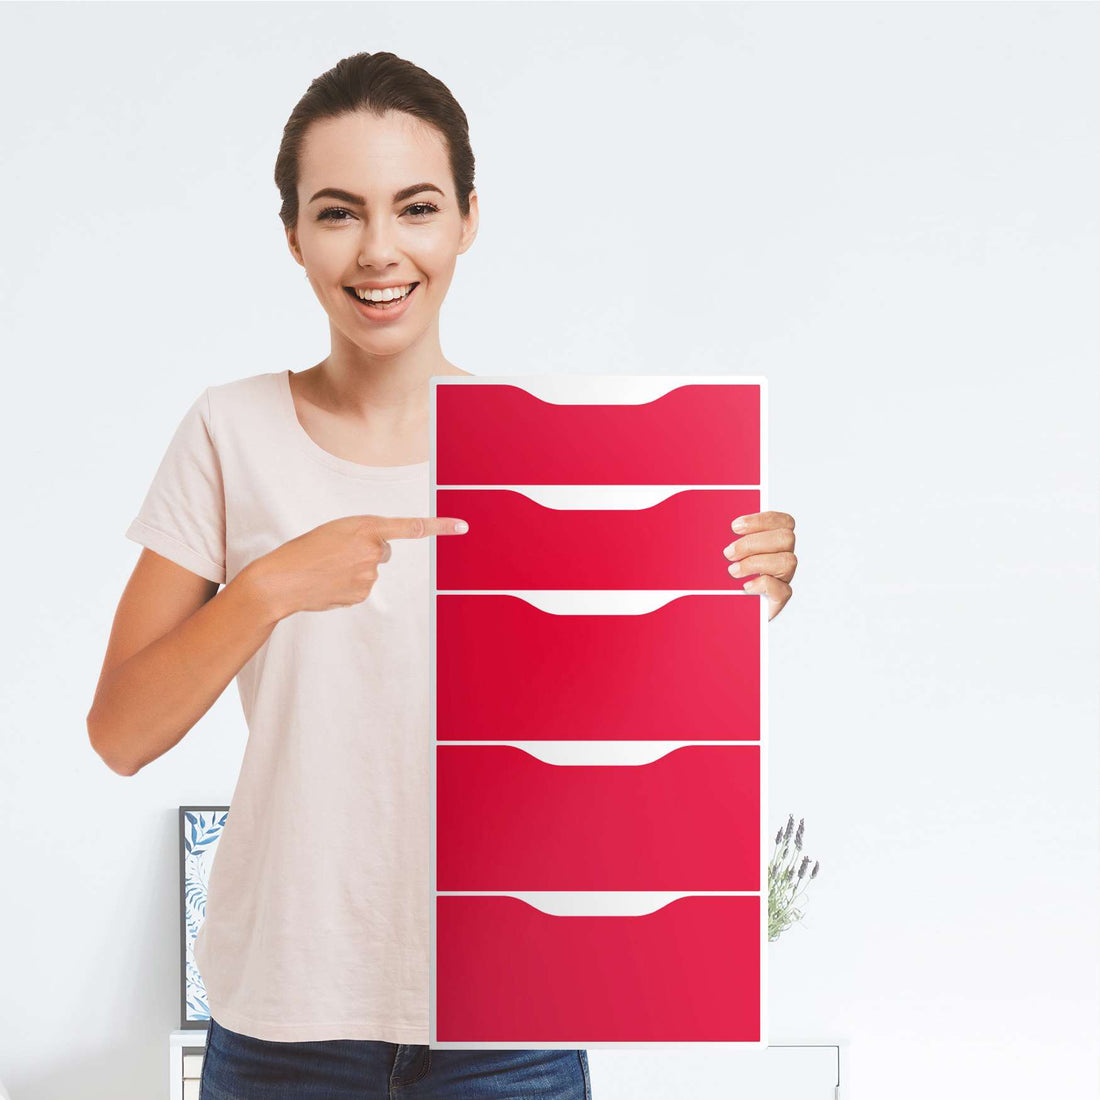 Klebefolie für Möbel Rot Light - IKEA Alex 5 Schubladen - Folie